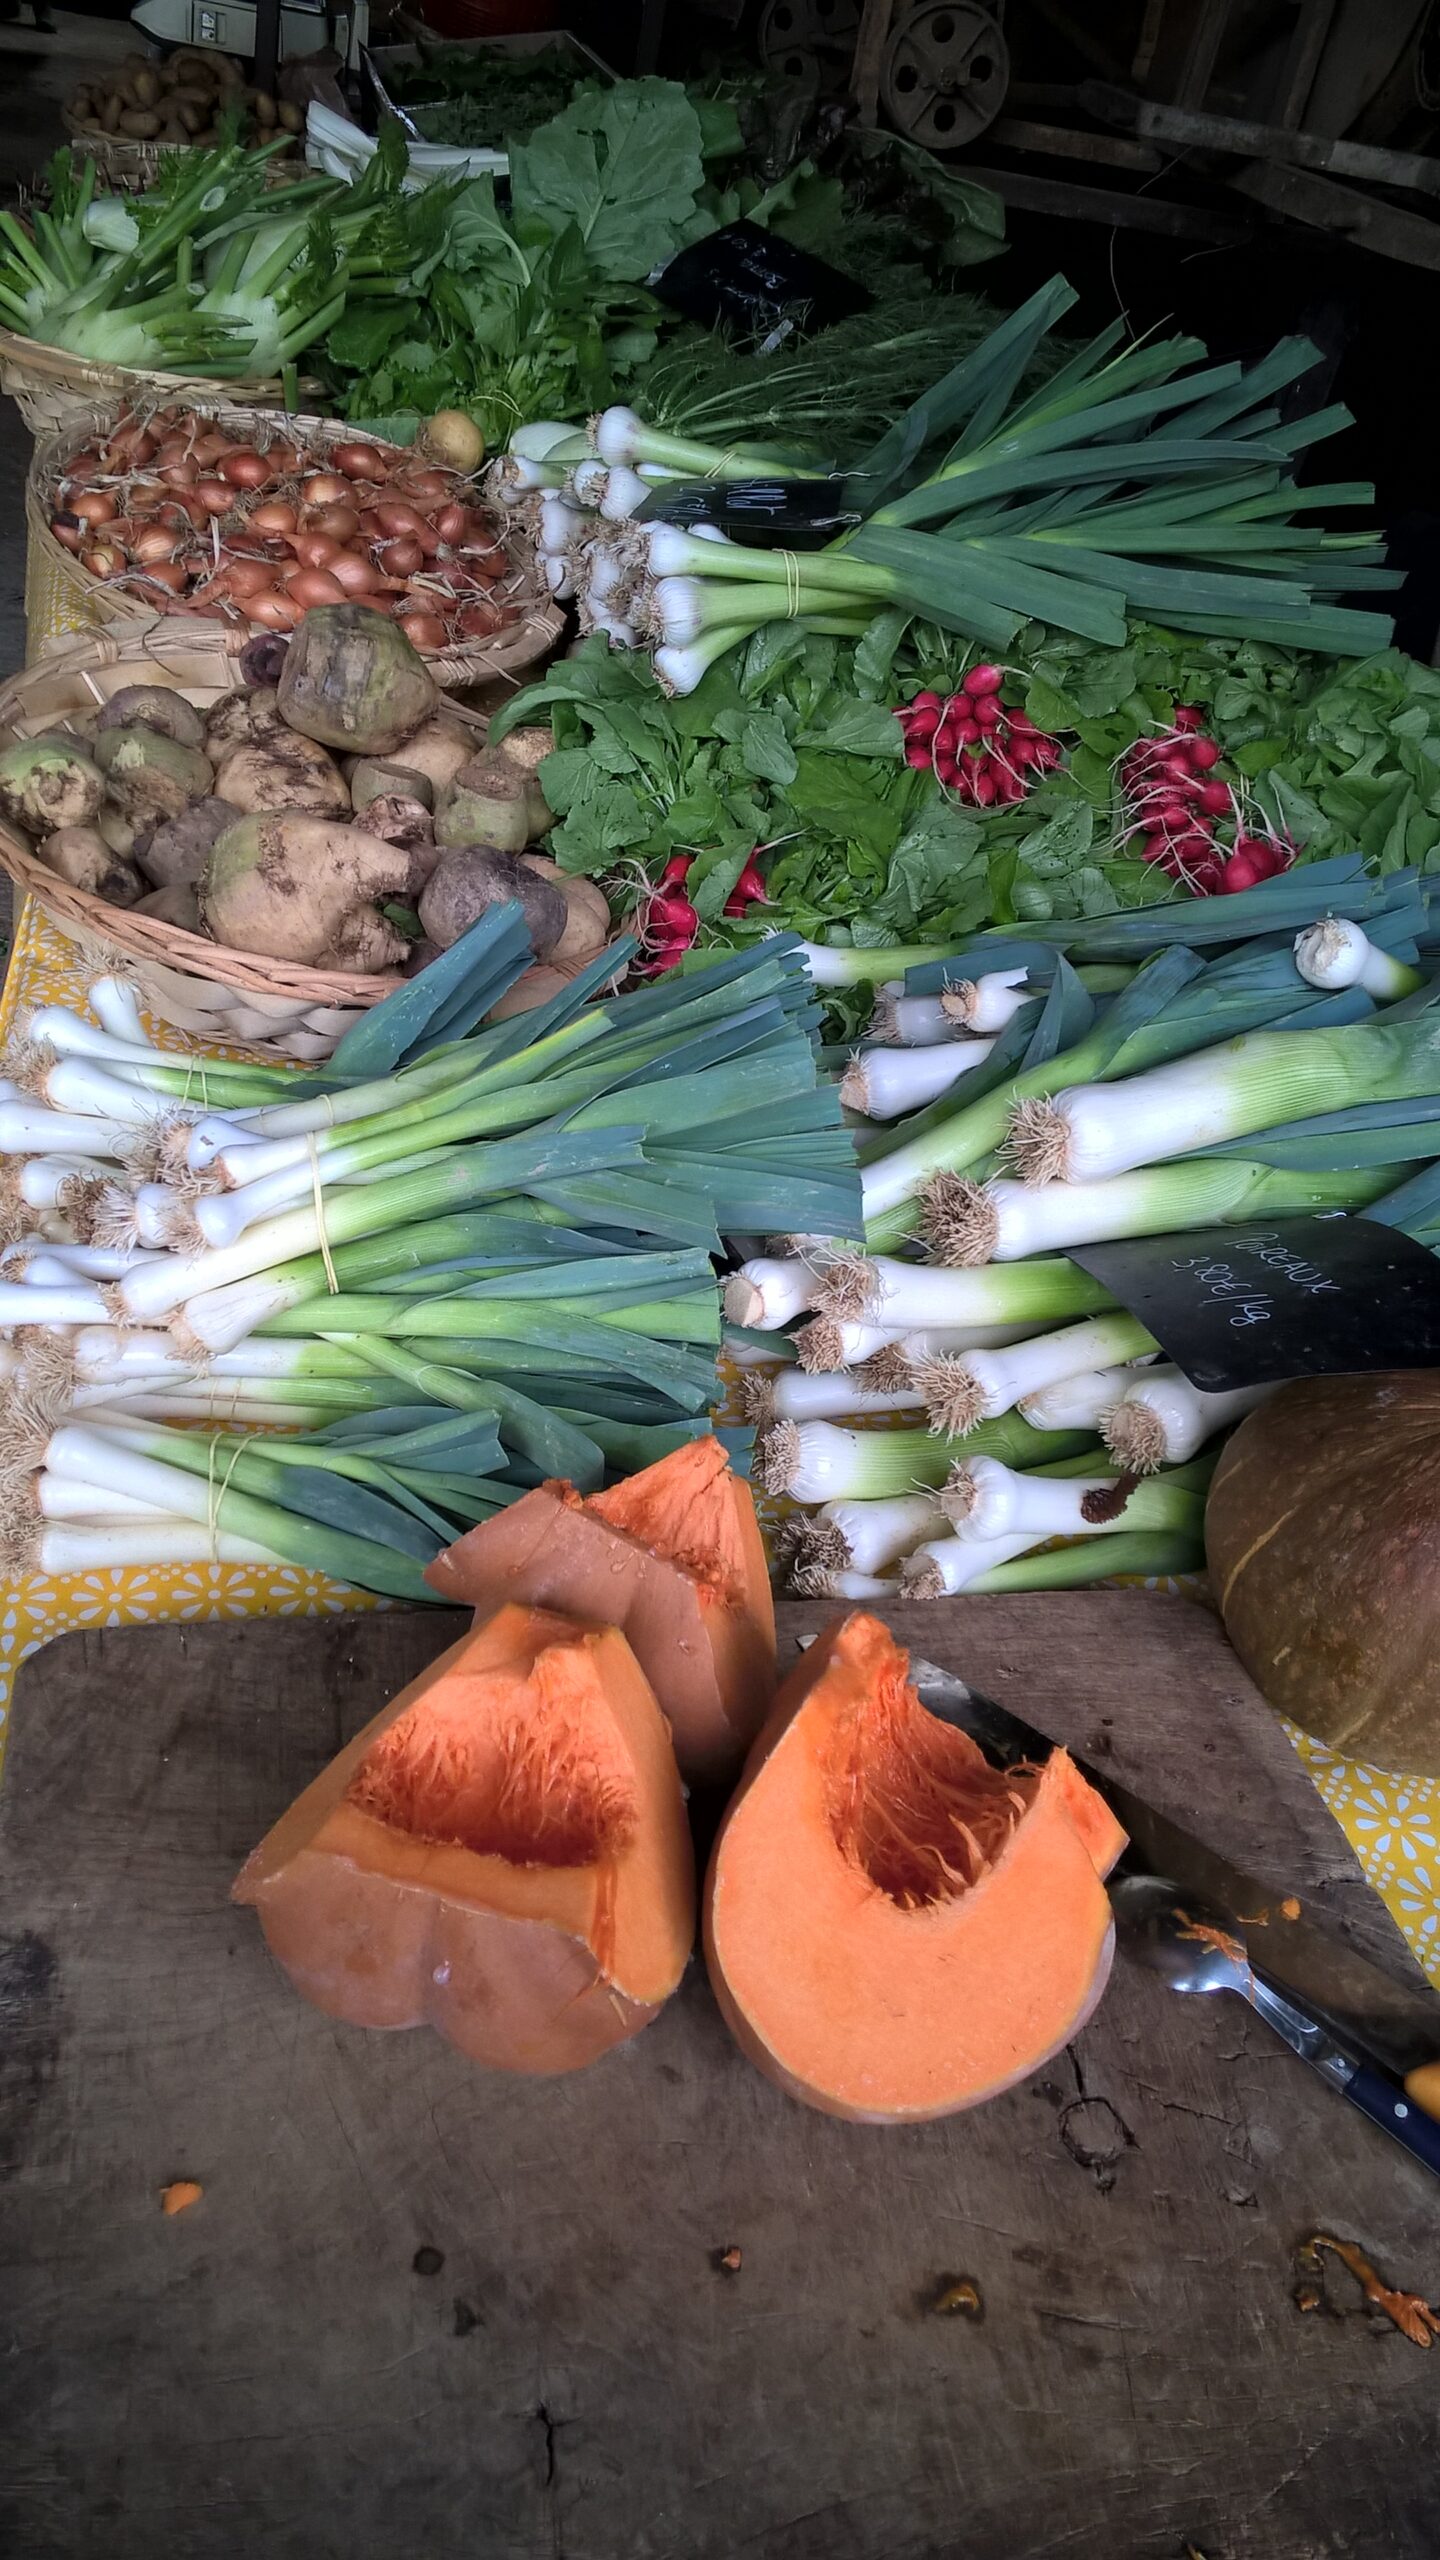 récoltes de légumes de saison de mai sur étal de marché poireaux radis